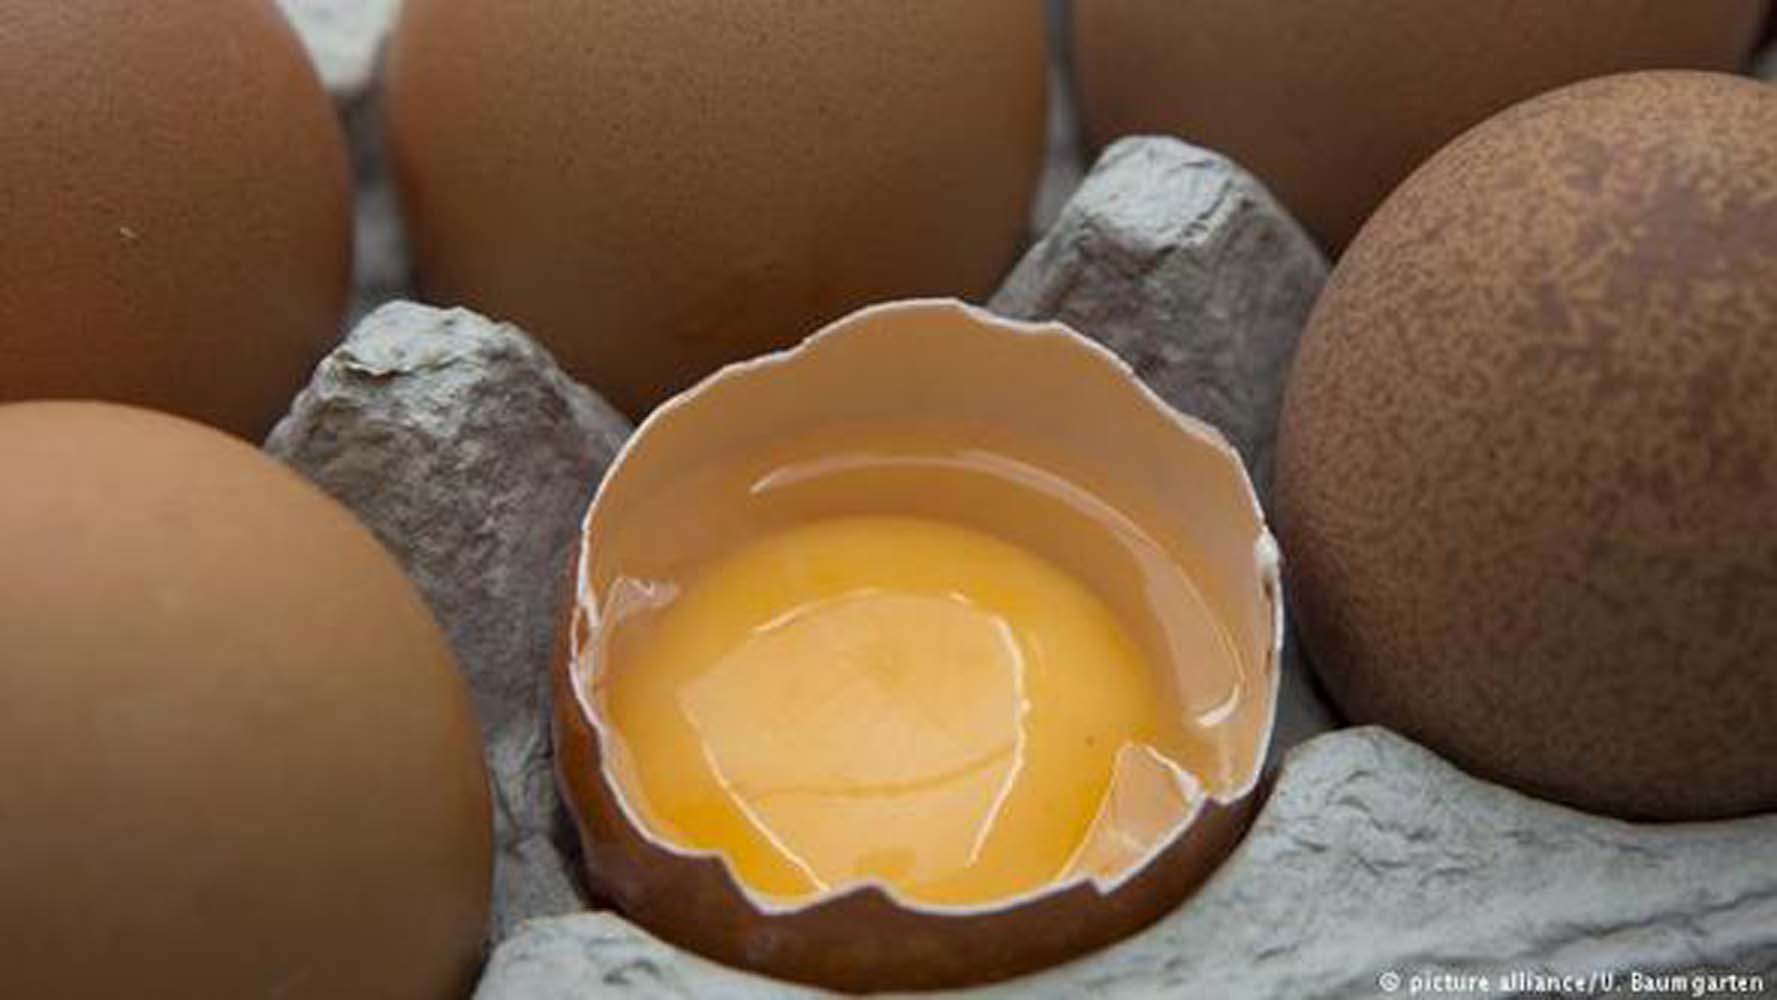 Цены на яйца в странах